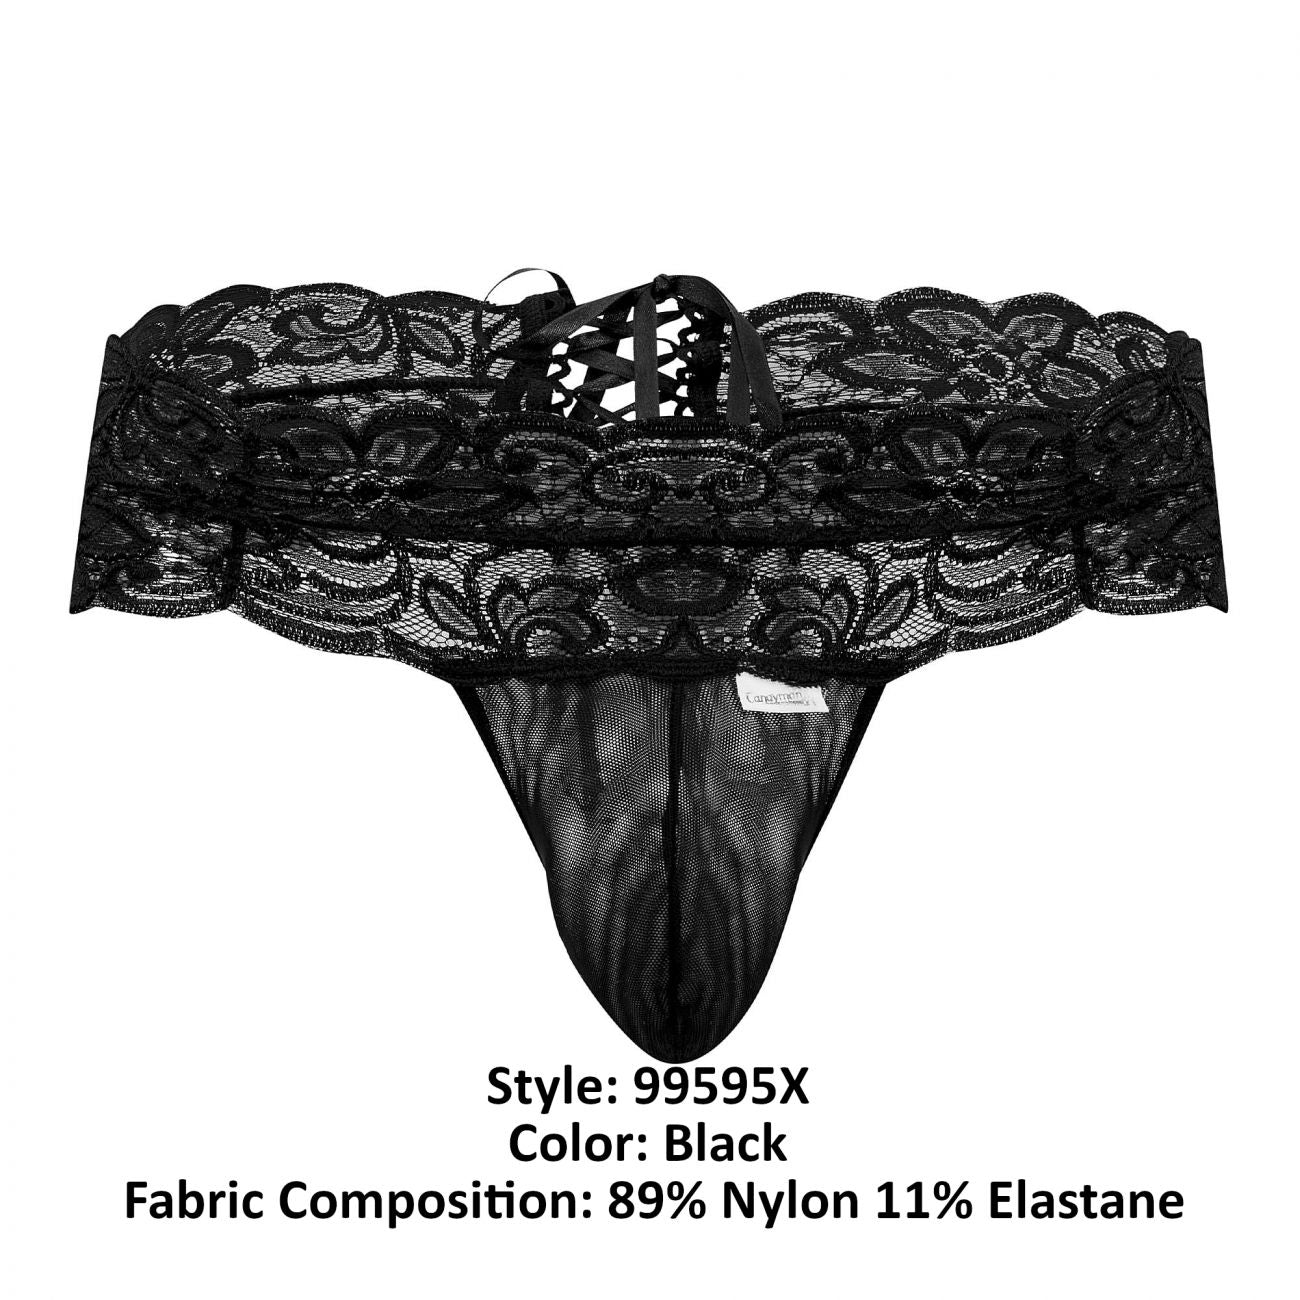 CandyMan 99595X Floral Lace Thongs Black Plus Sizes